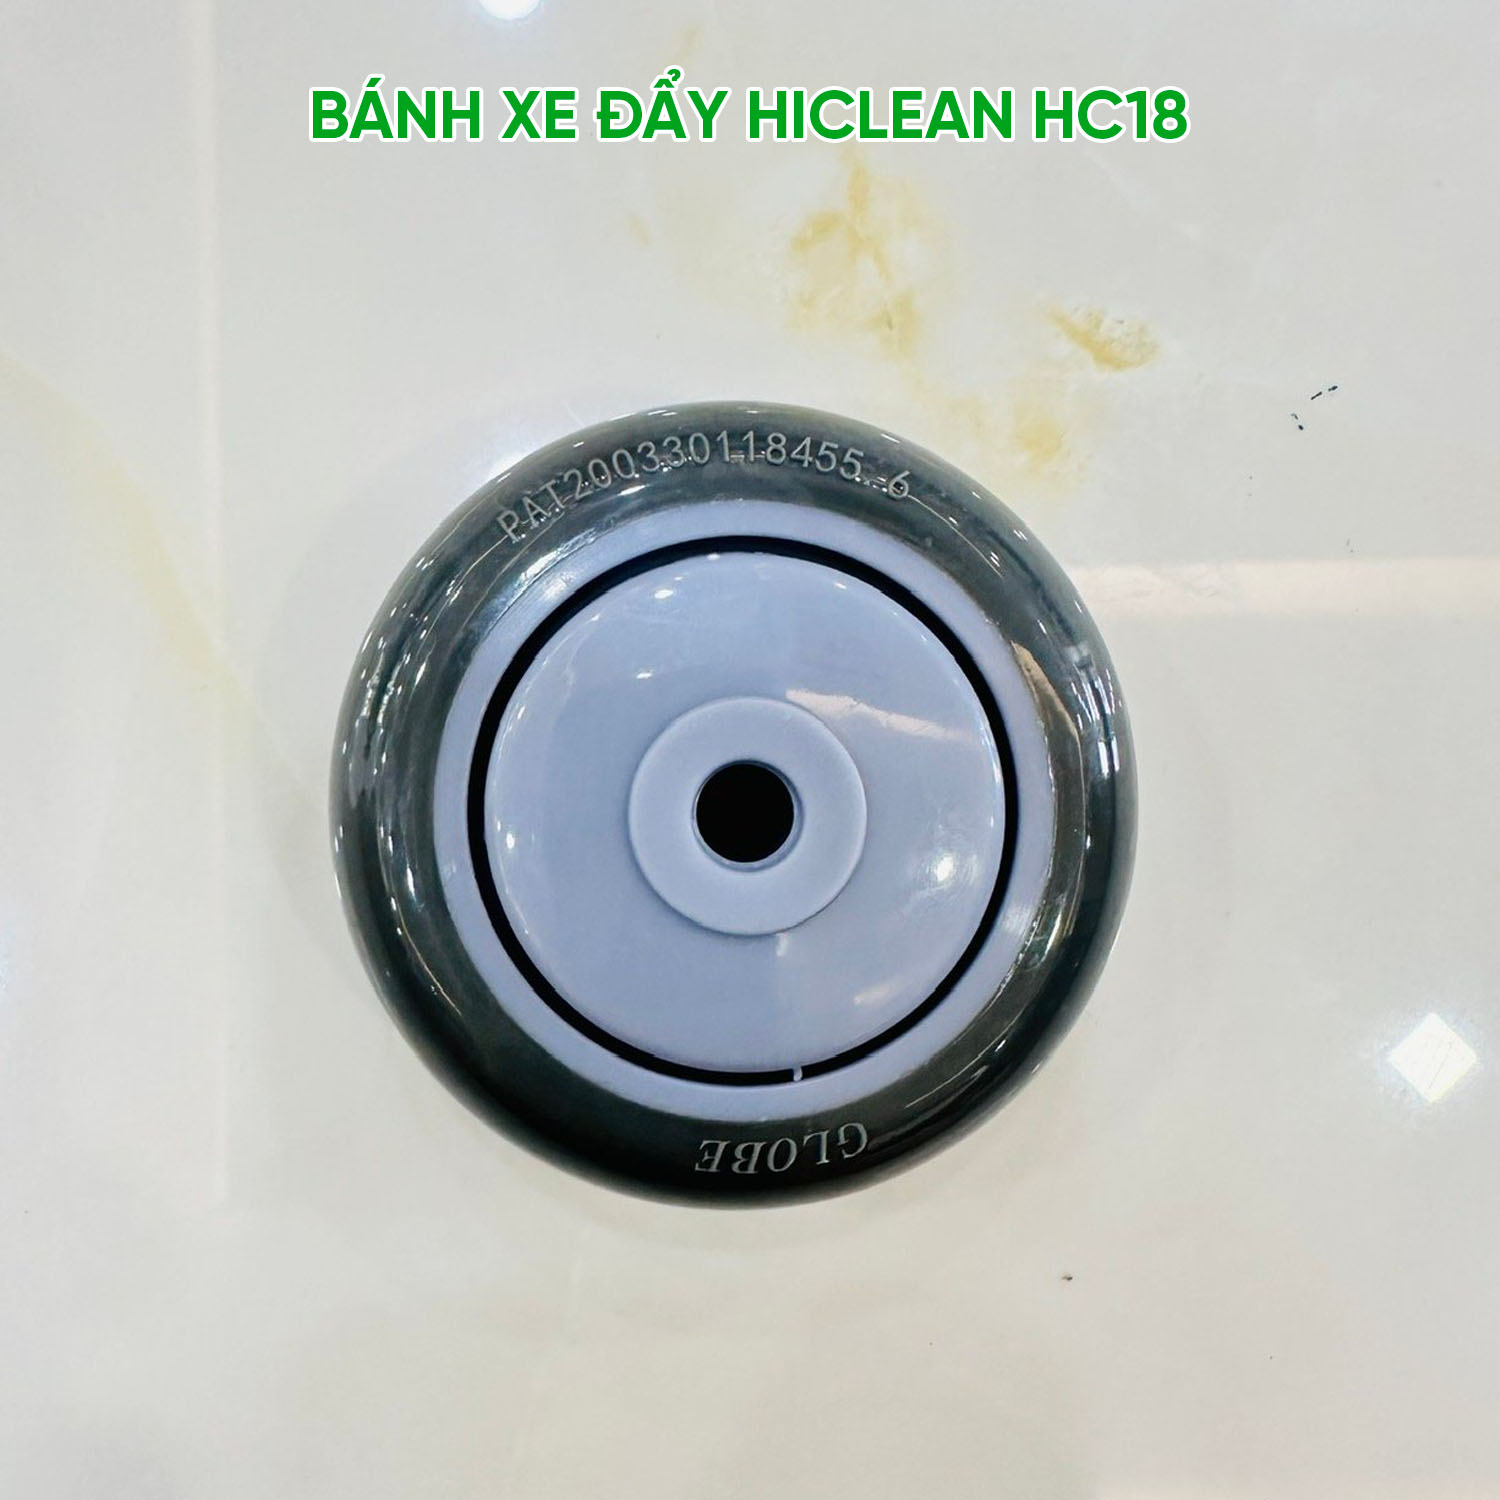 banh_xe_day_may_cha_san_hiclean_hc18